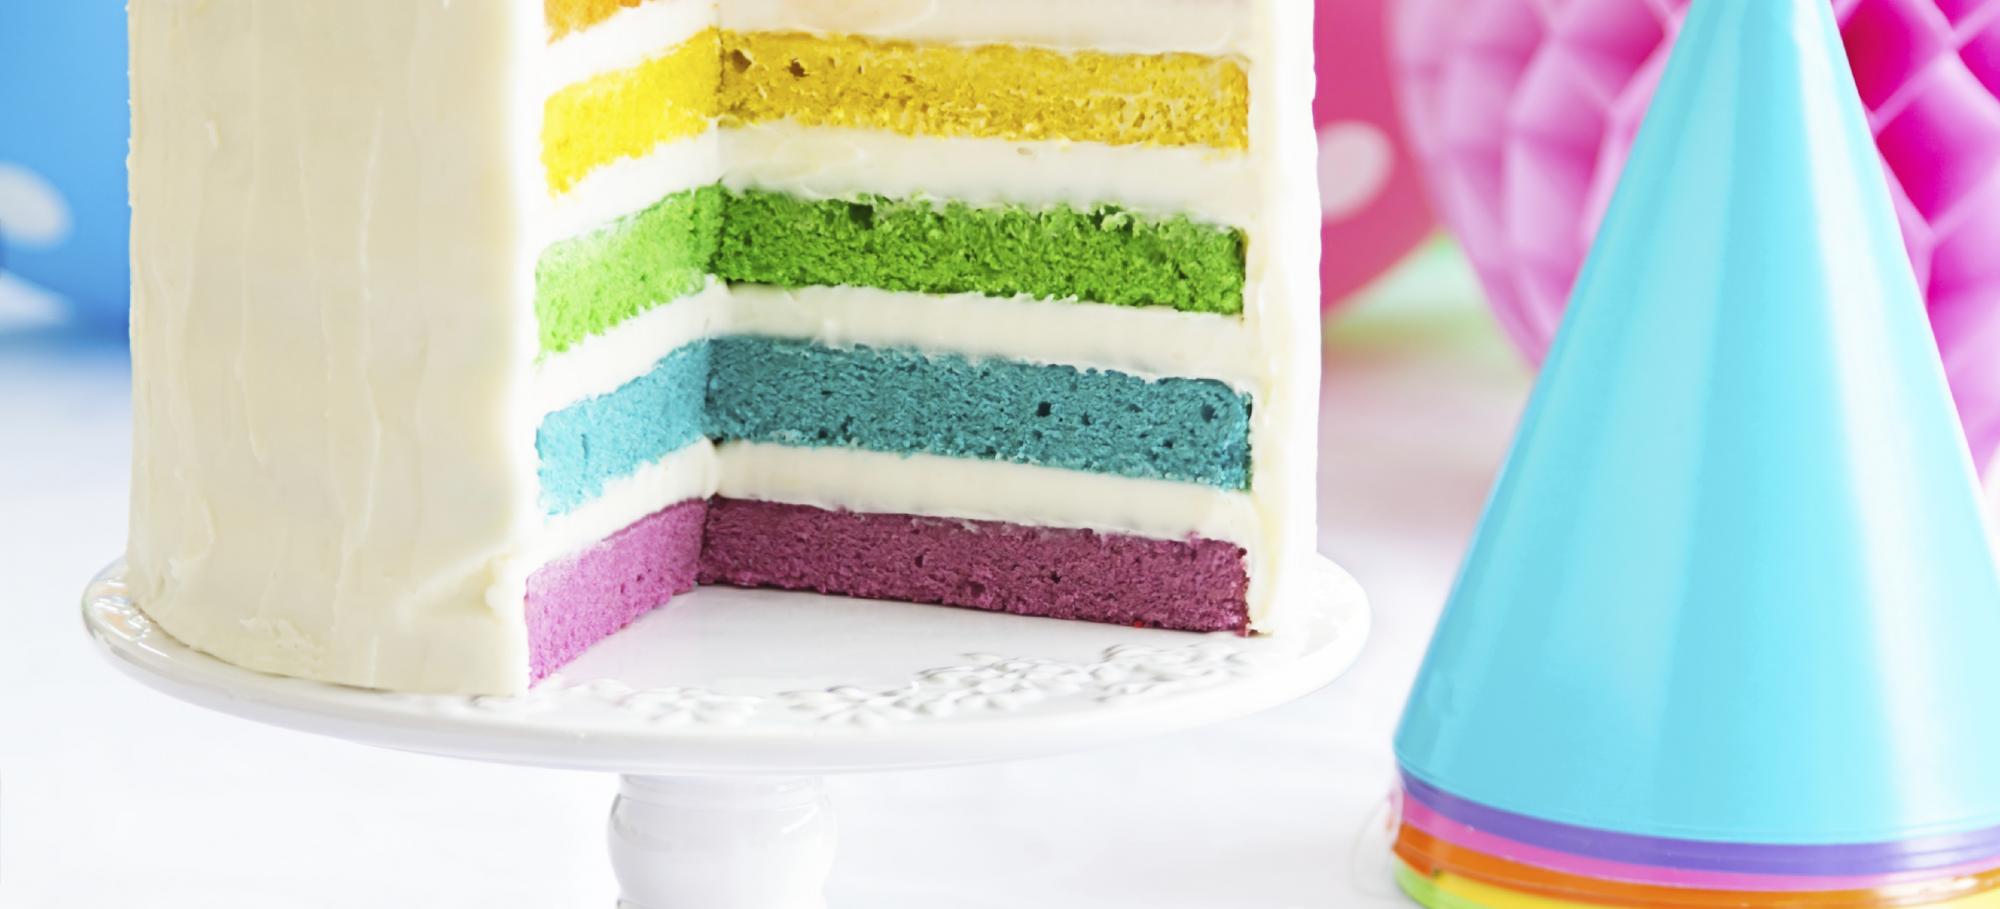 Rainbow cake (gâteau arc-en-ciel) - recette facile